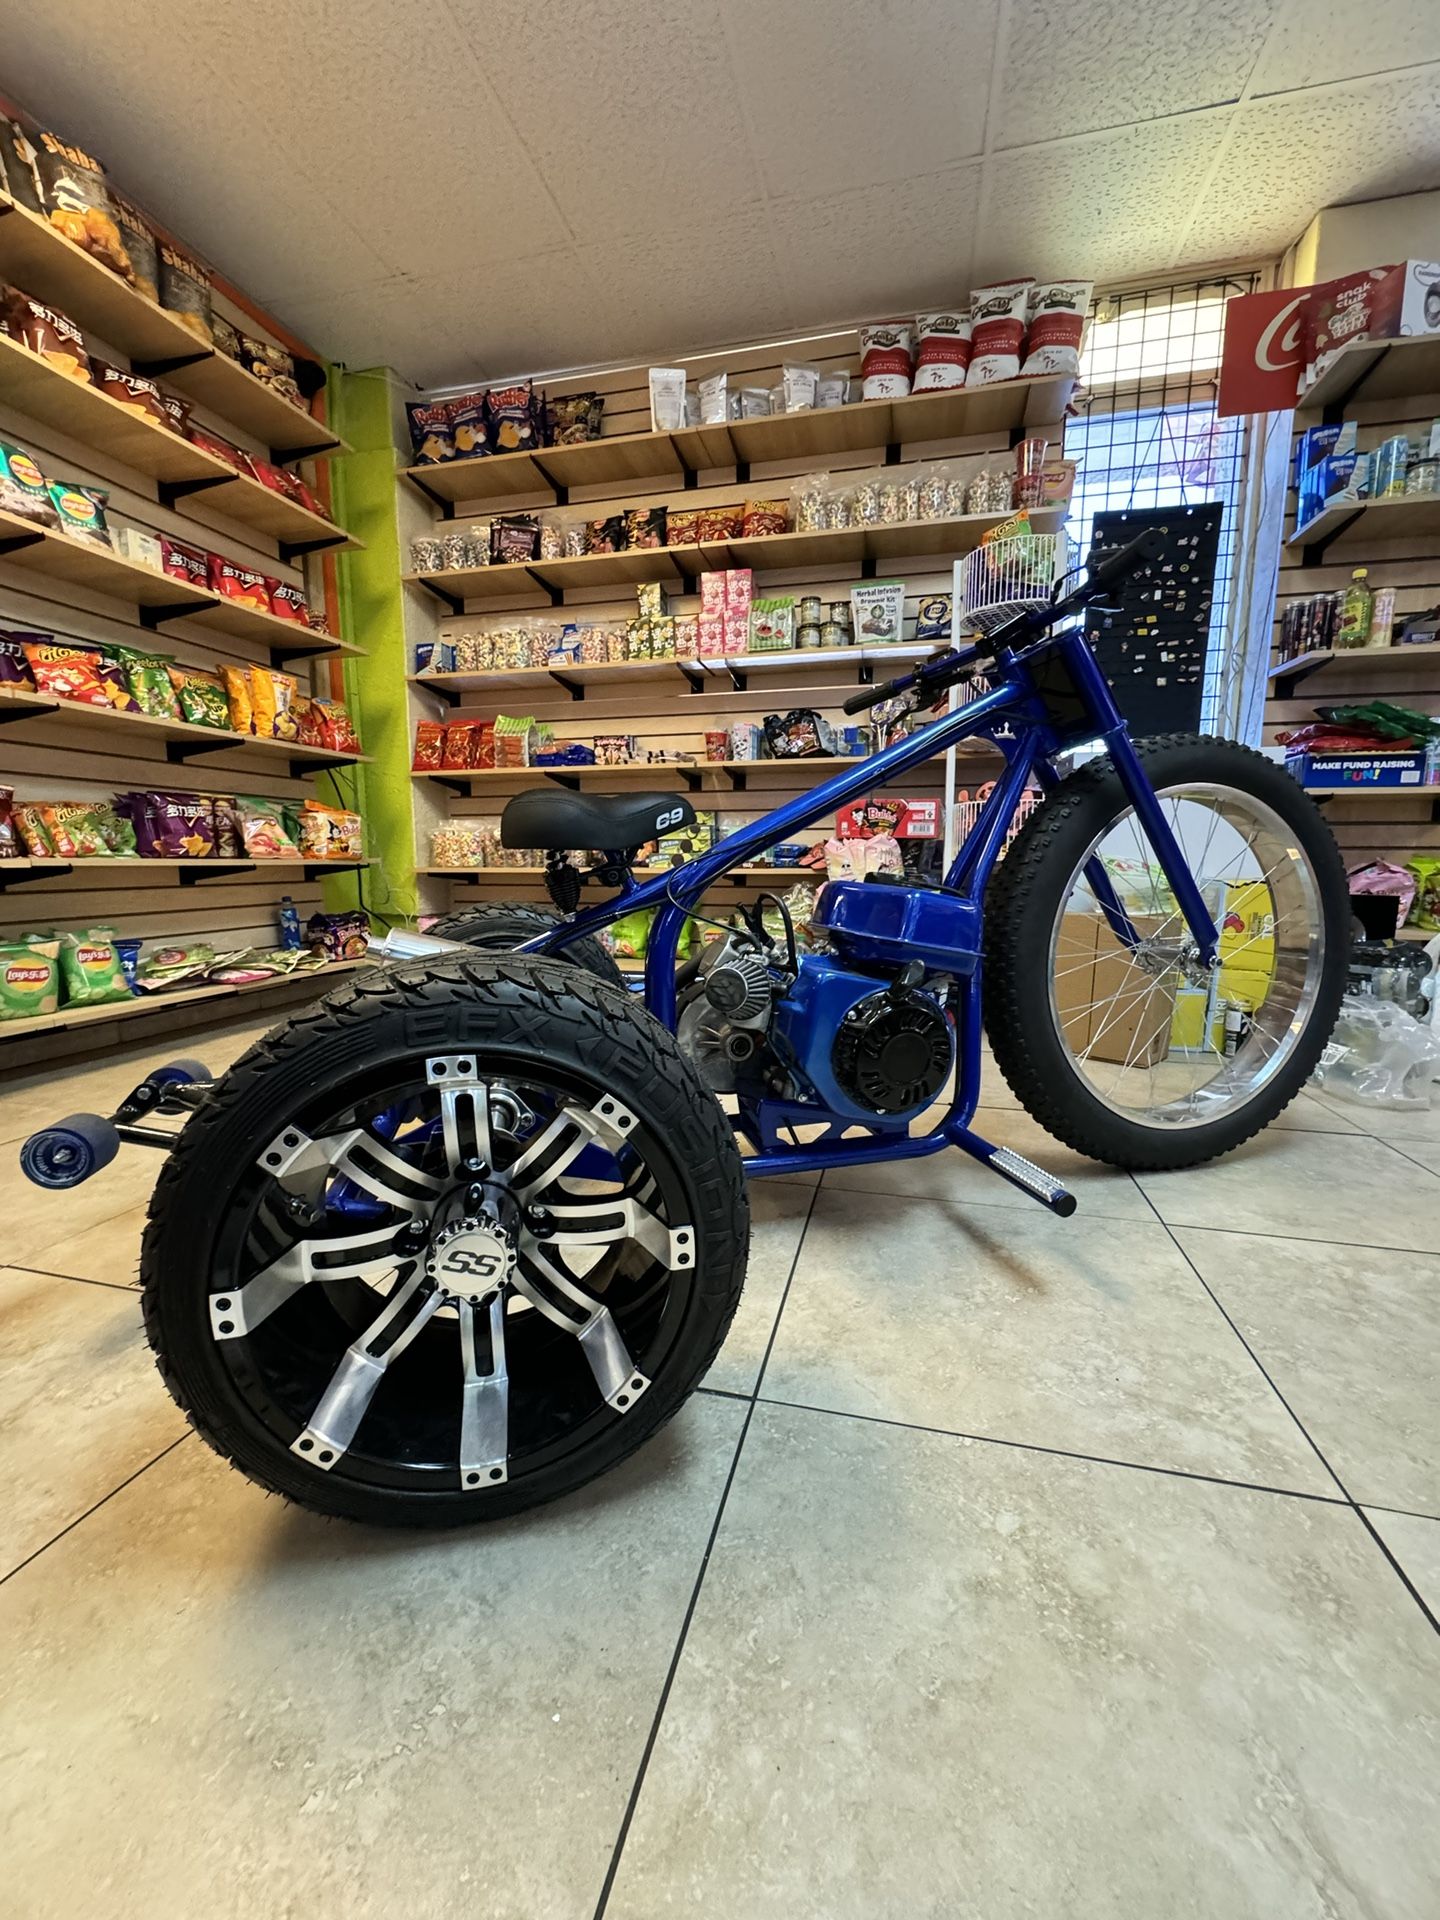 Custom Built Trike Mini Bike 